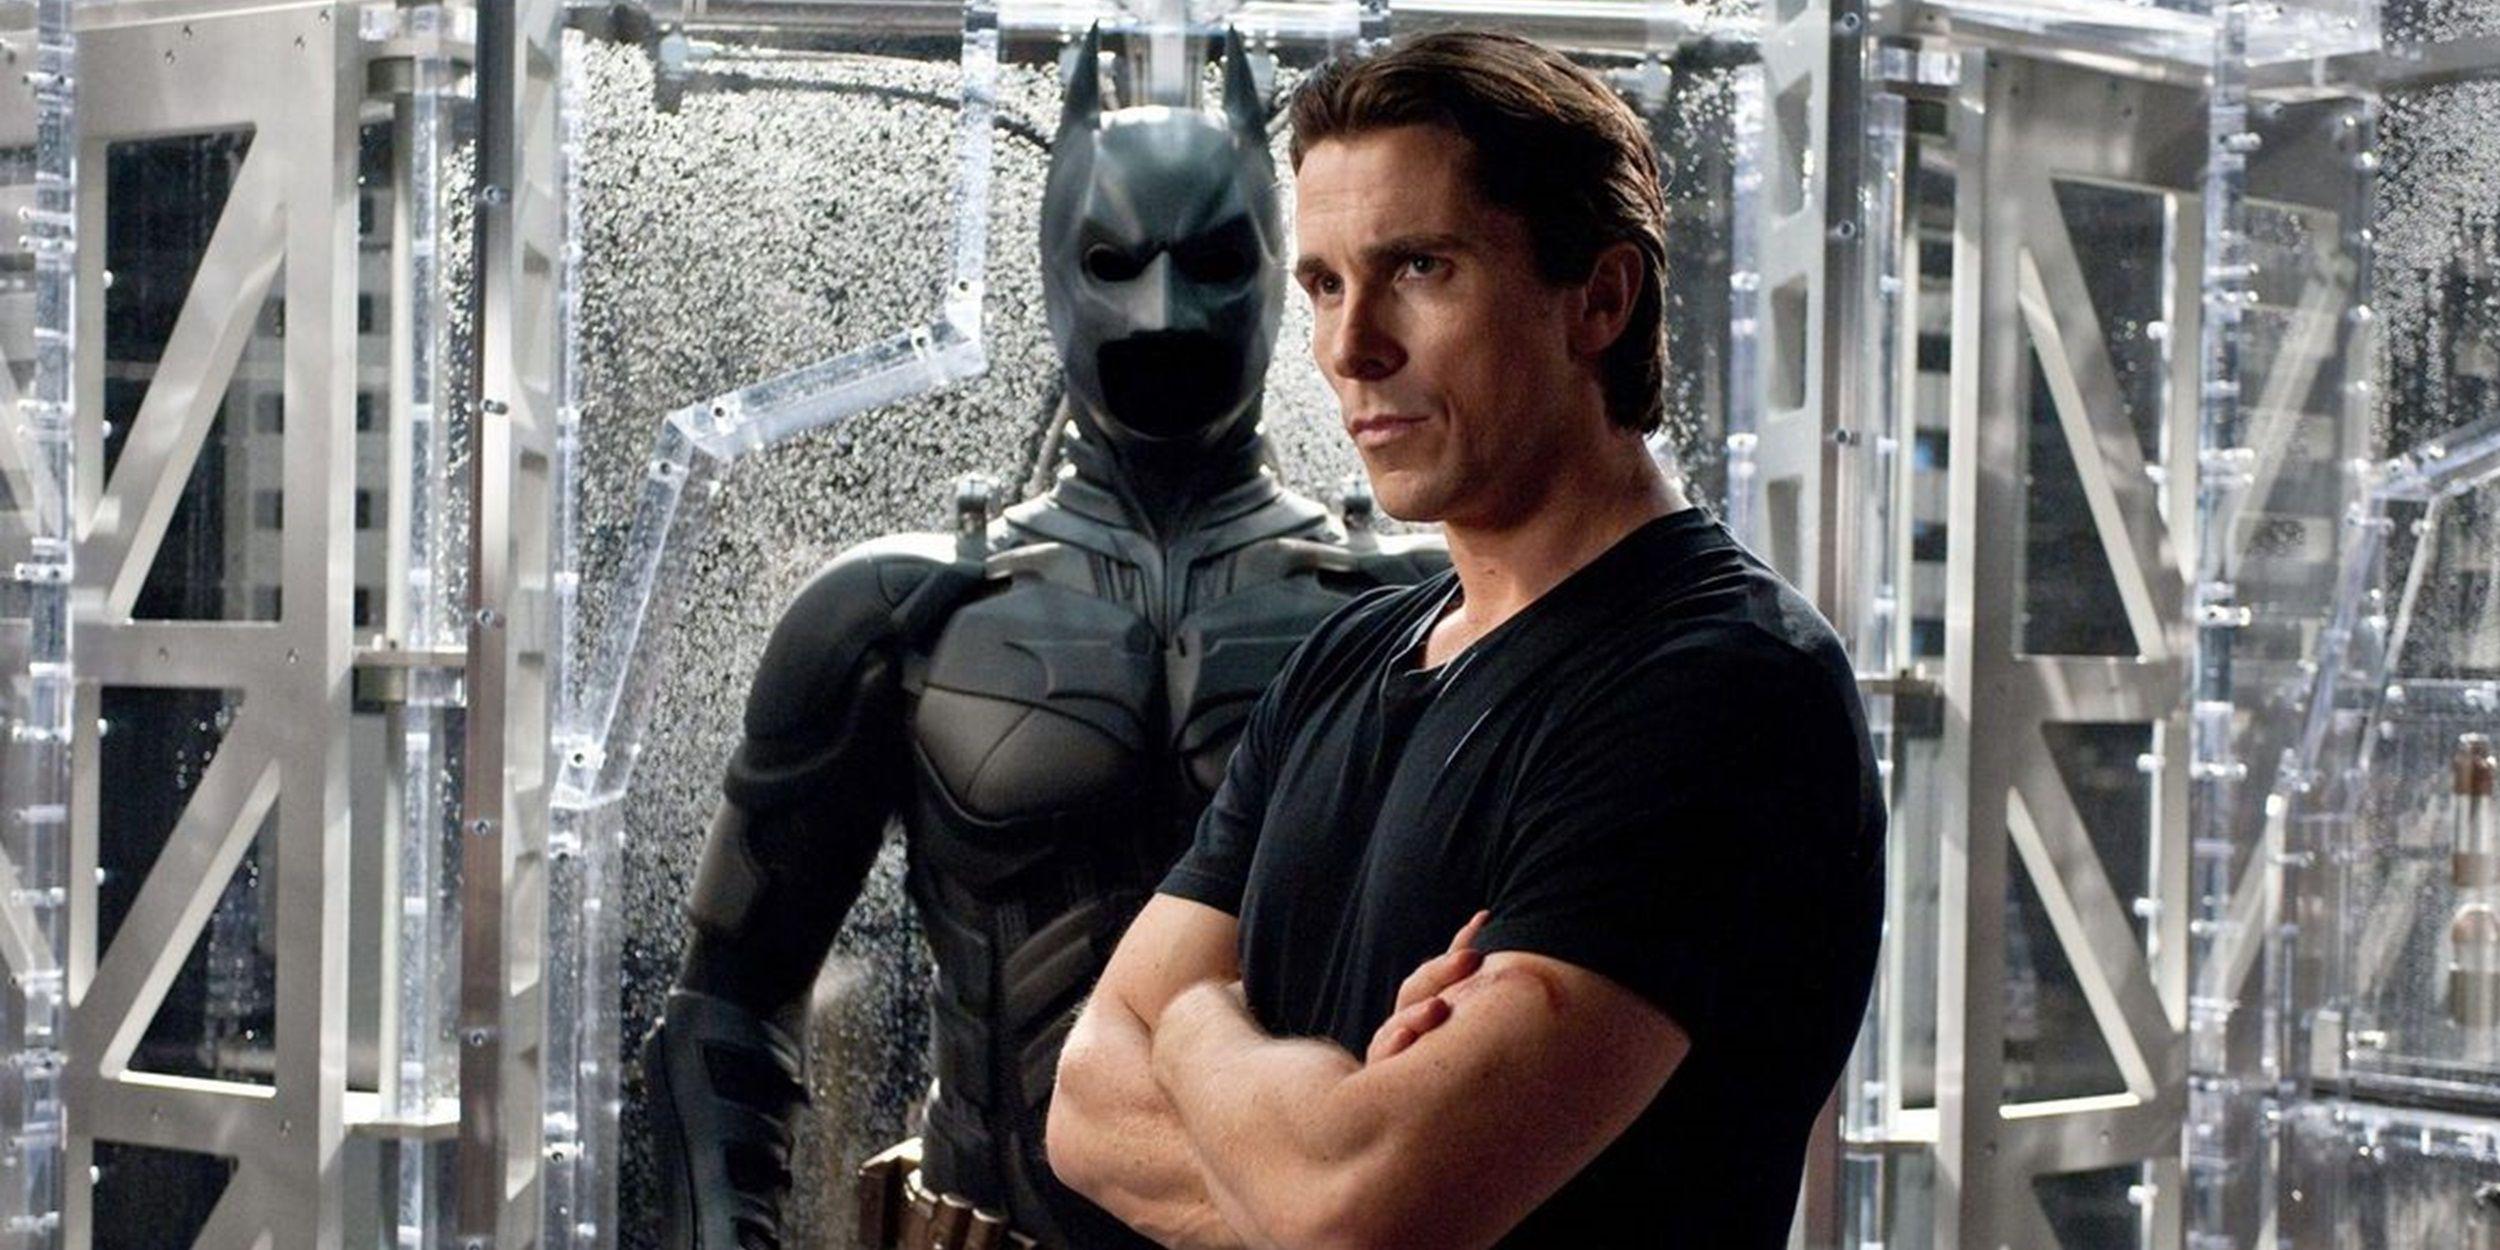 Christian Bale teria parado de atuar se tivesse que continuar interpretando o Batman